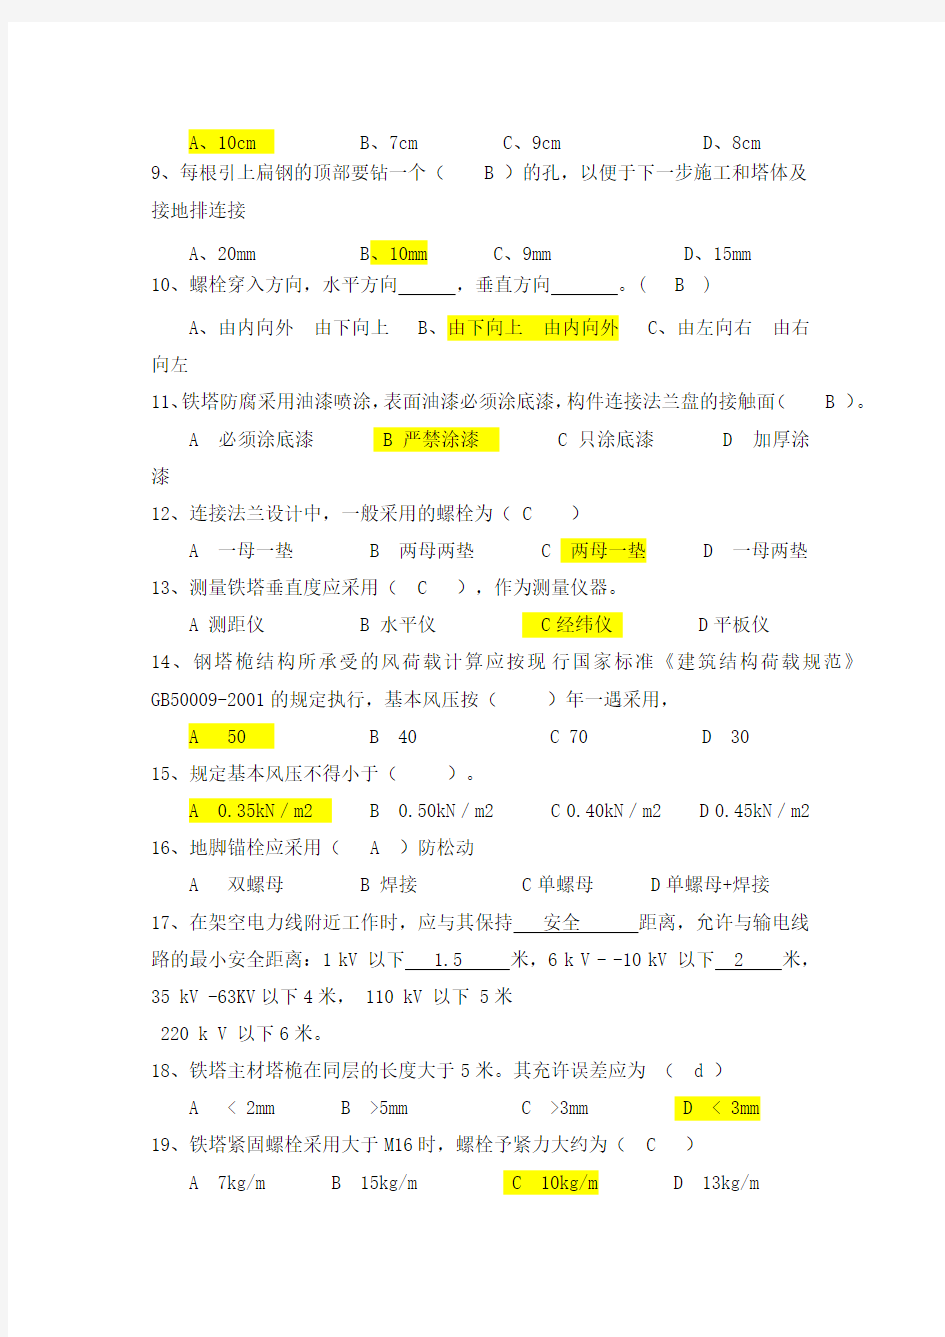 中国铁塔安全质量考试试题2A